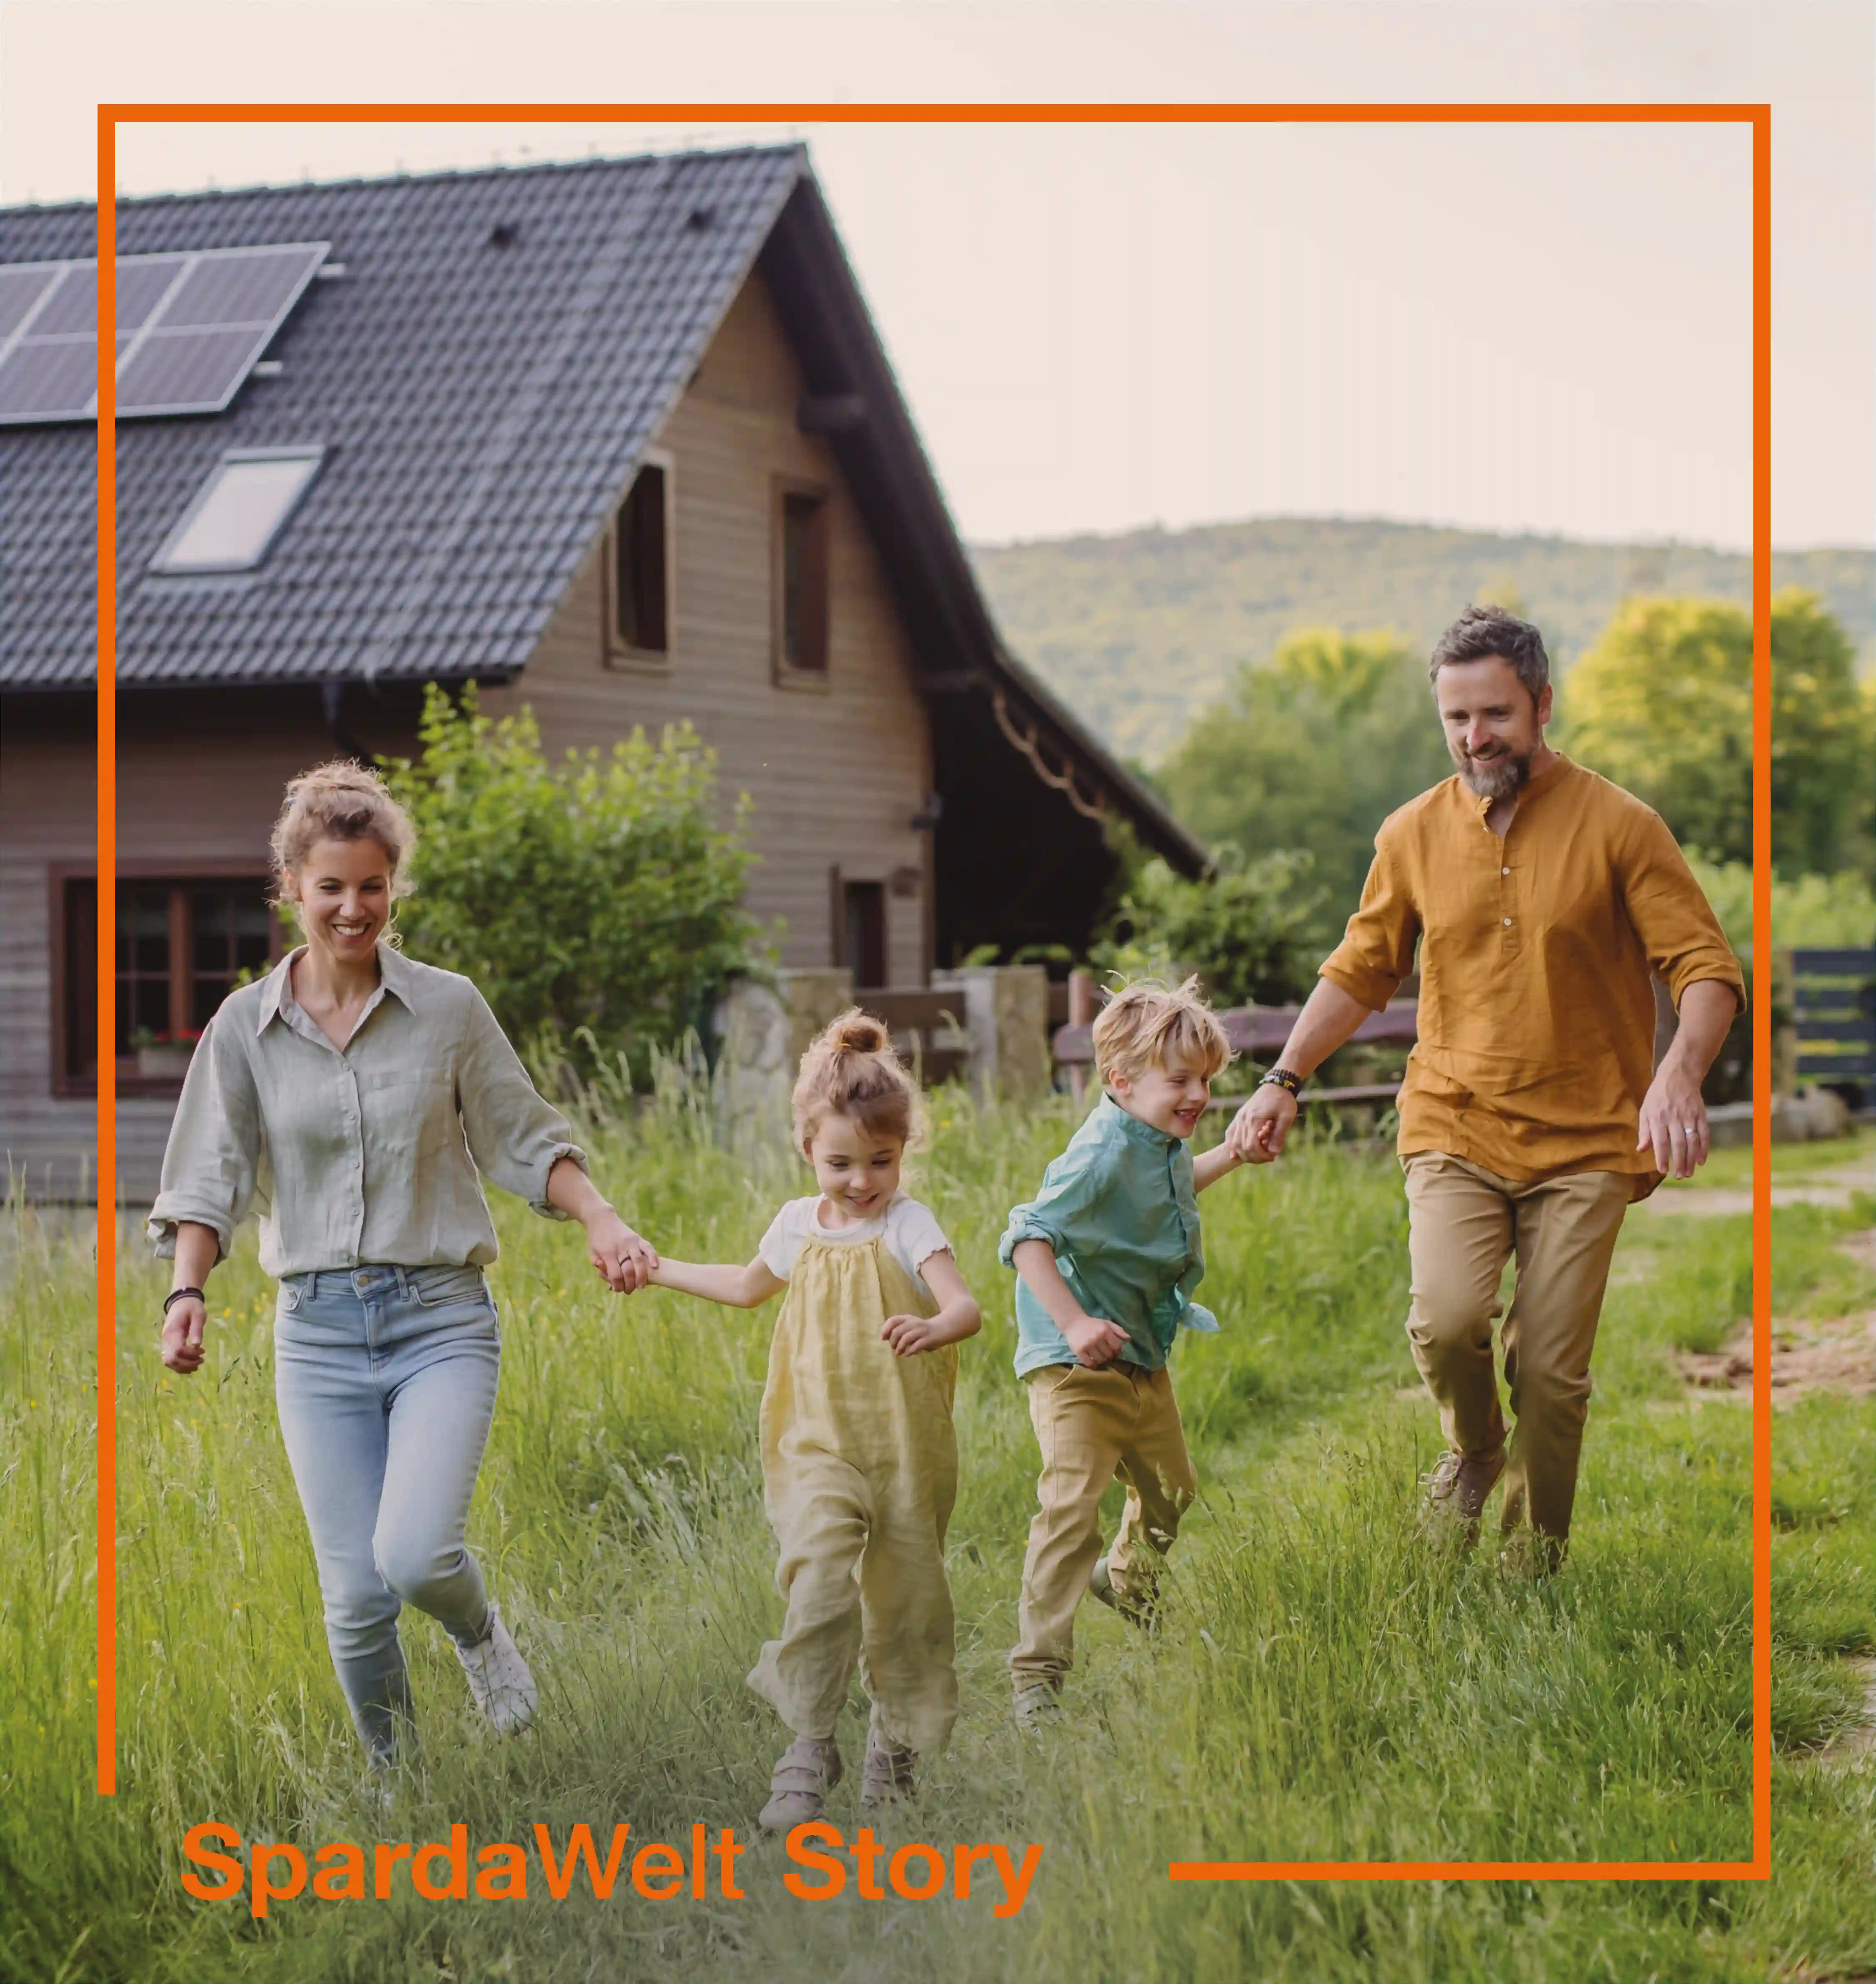 Eine vierköpfige Familie läuft über die Wiese vor ihrem Haus. Um das Bild herum ist ein orangener Rahmen. Der Schriftzug "SpardaWelt Story" weißt darauf hin, dass es sich um eine Empfehlung zu einer anderen SpardaWelt Story handelt.